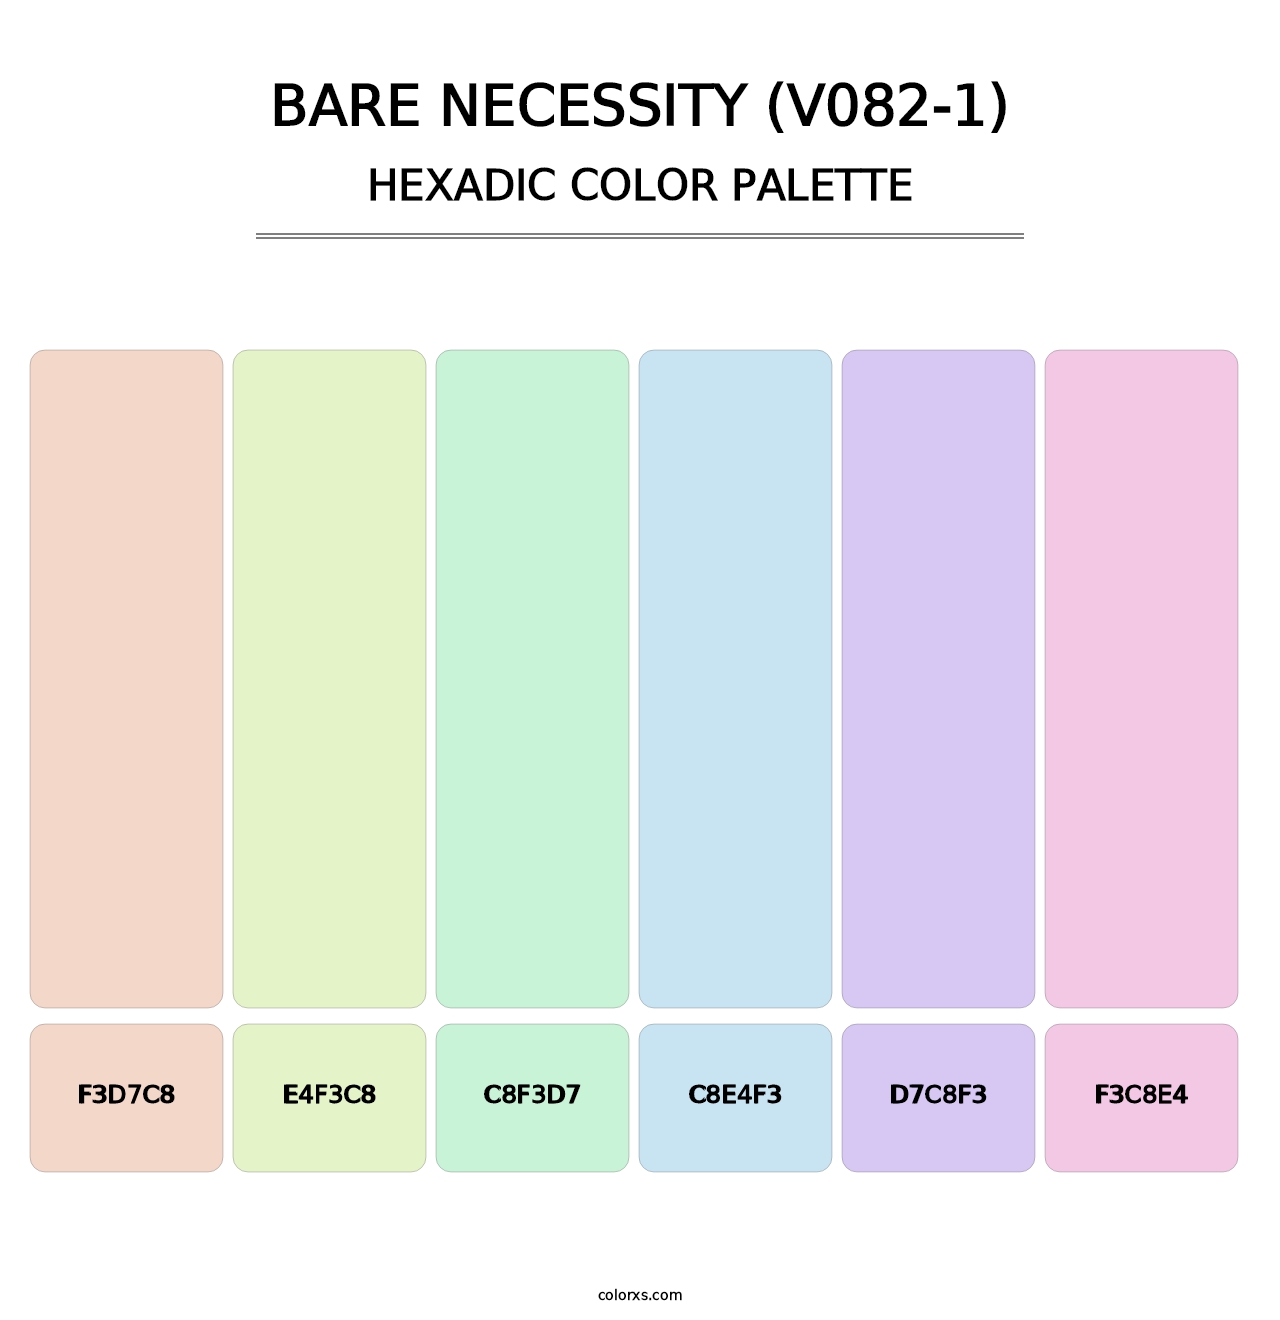 Bare Necessity (V082-1) - Hexadic Color Palette